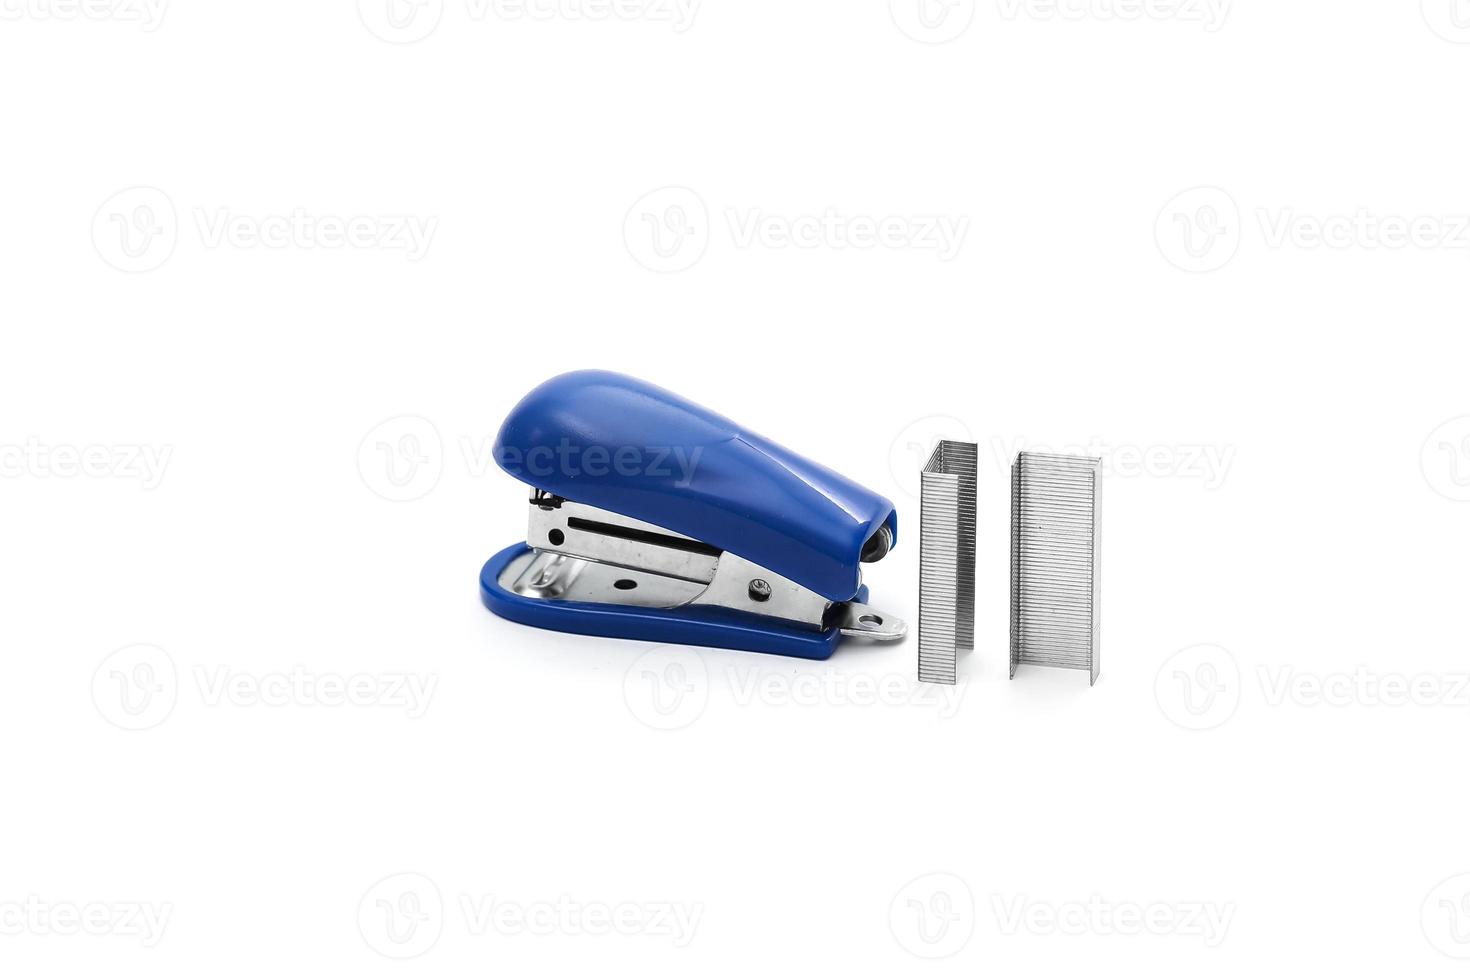 grampeador de escritório azul com suportes de metal são isolados no fundo branco foto